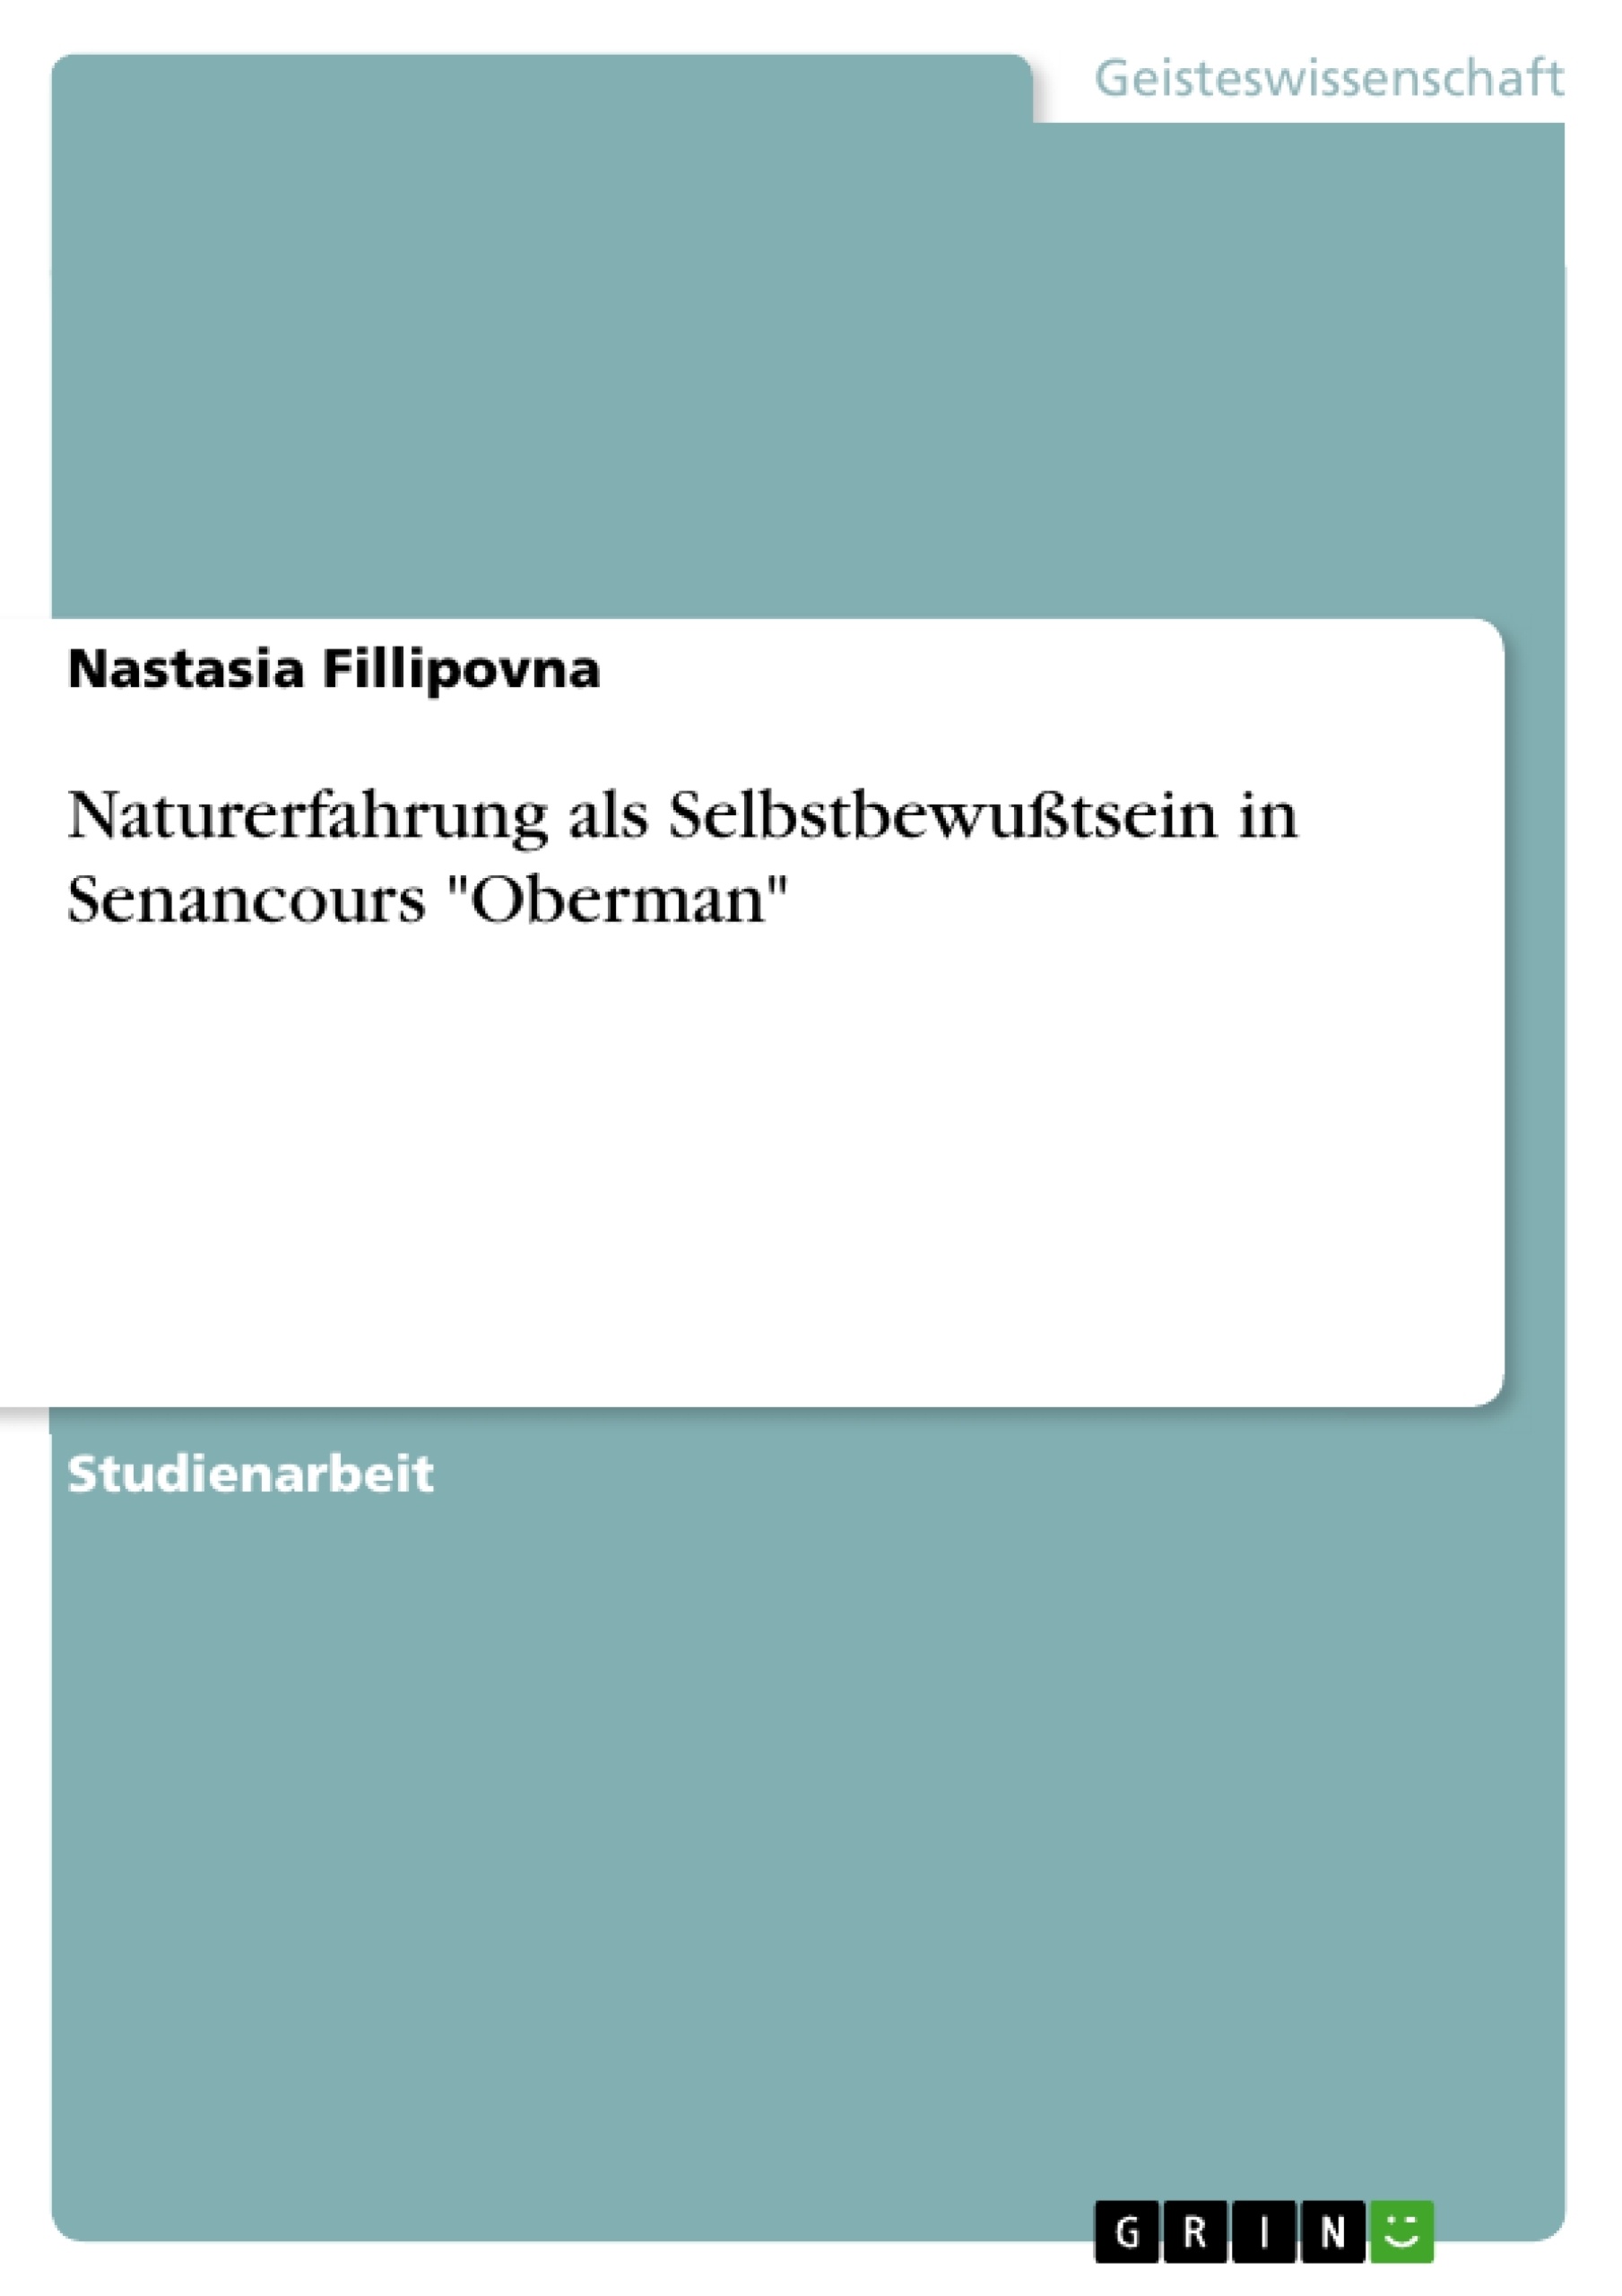 Title: Naturerfahrung als Selbstbewußtsein in Senancours "Oberman"